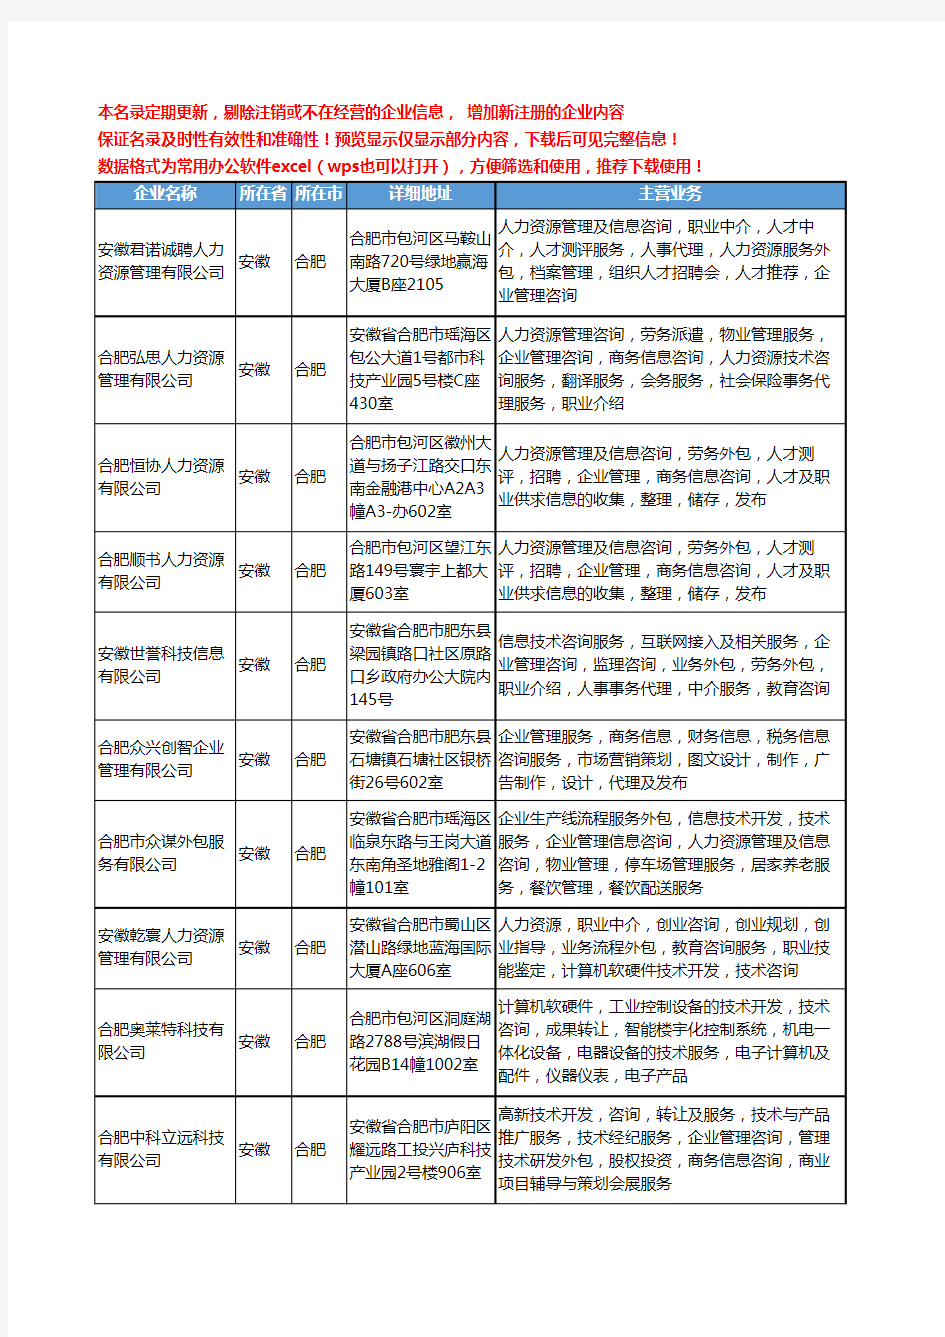 新版安徽省合肥人力资源外包服务工商企业公司商家名录名单联系方式大全352家